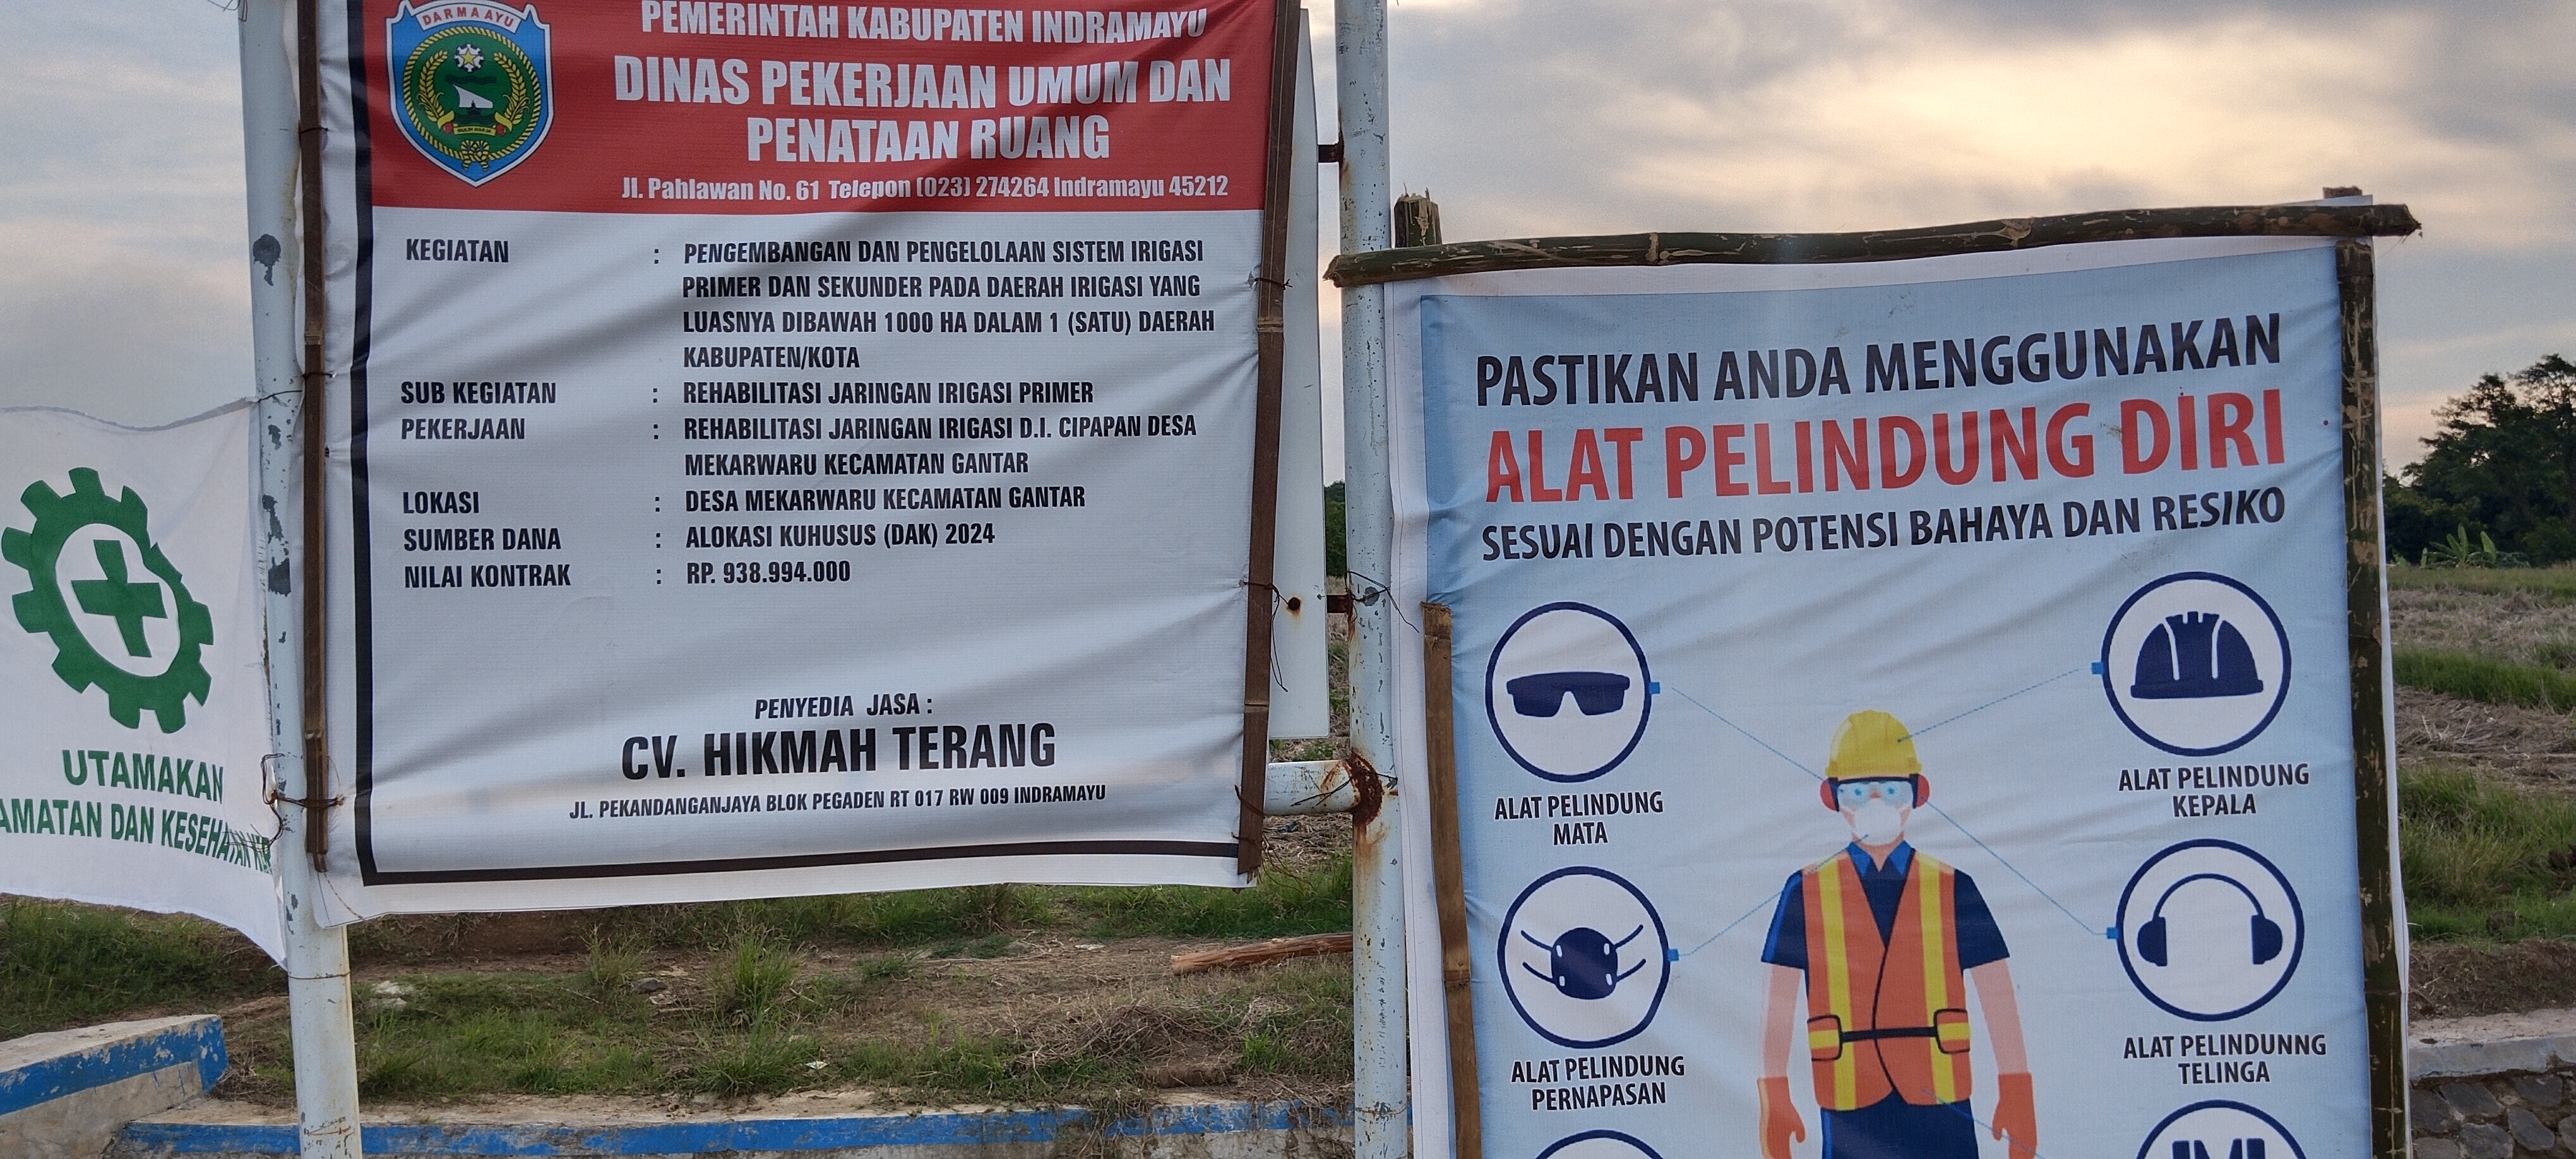 Dikonfirmasi Soal Pekerja Abaikan APD, Kabid PSDA PUPR Indramyu Bungkam